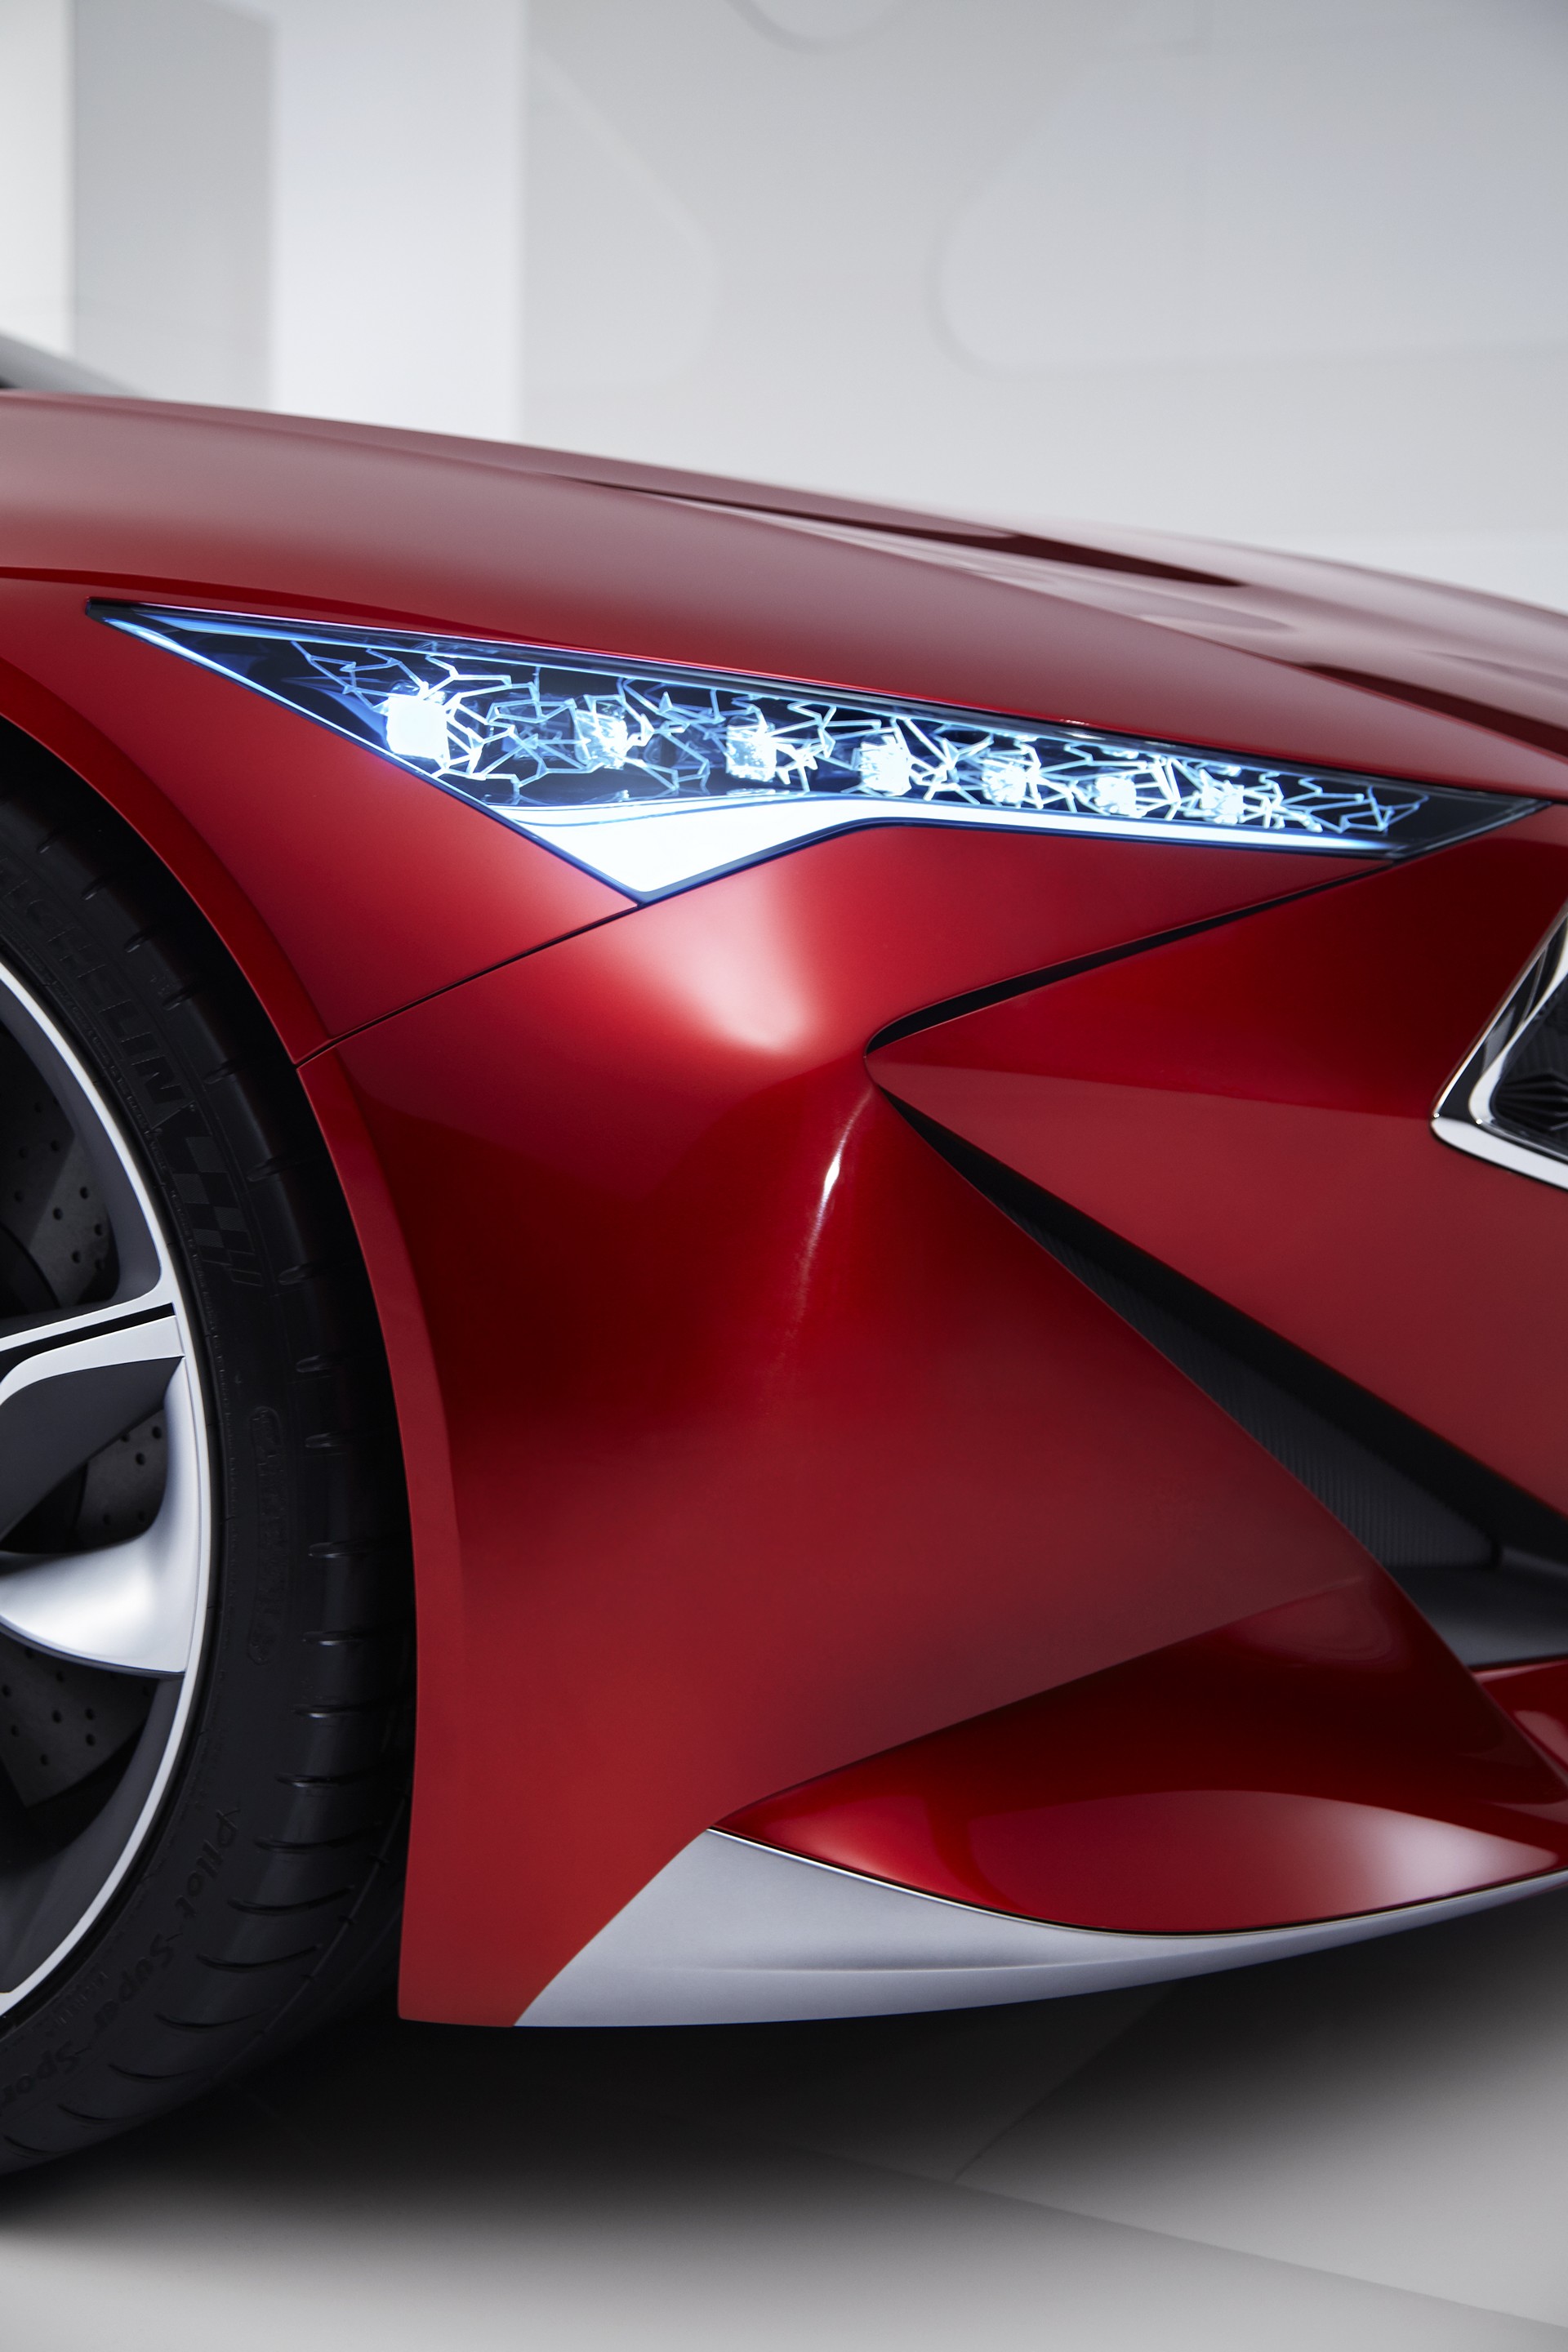 2016 Acura Precision Concept © Honda Motor Co. Ltd.